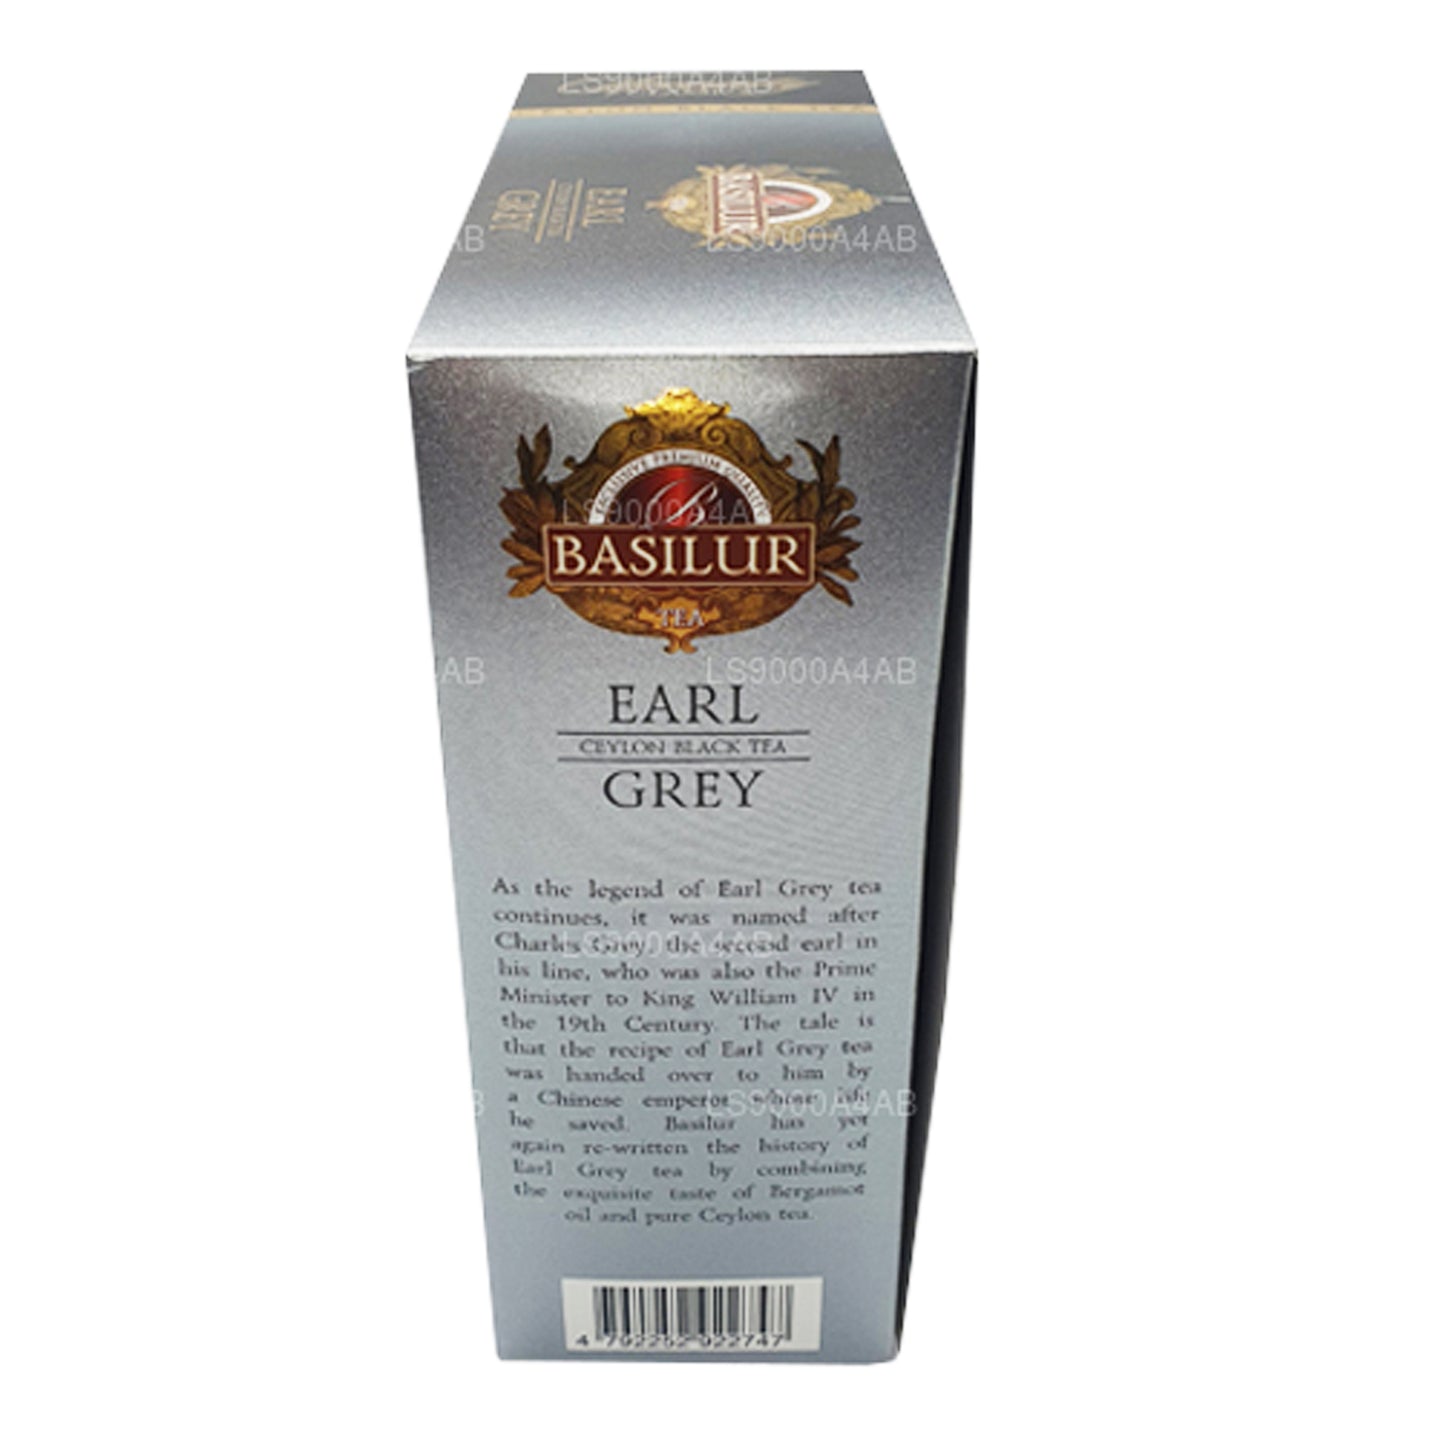 Basilur Speciality Classics Earl Grey Seylan Siyah Çay (200g) 100 Çay Poşeti